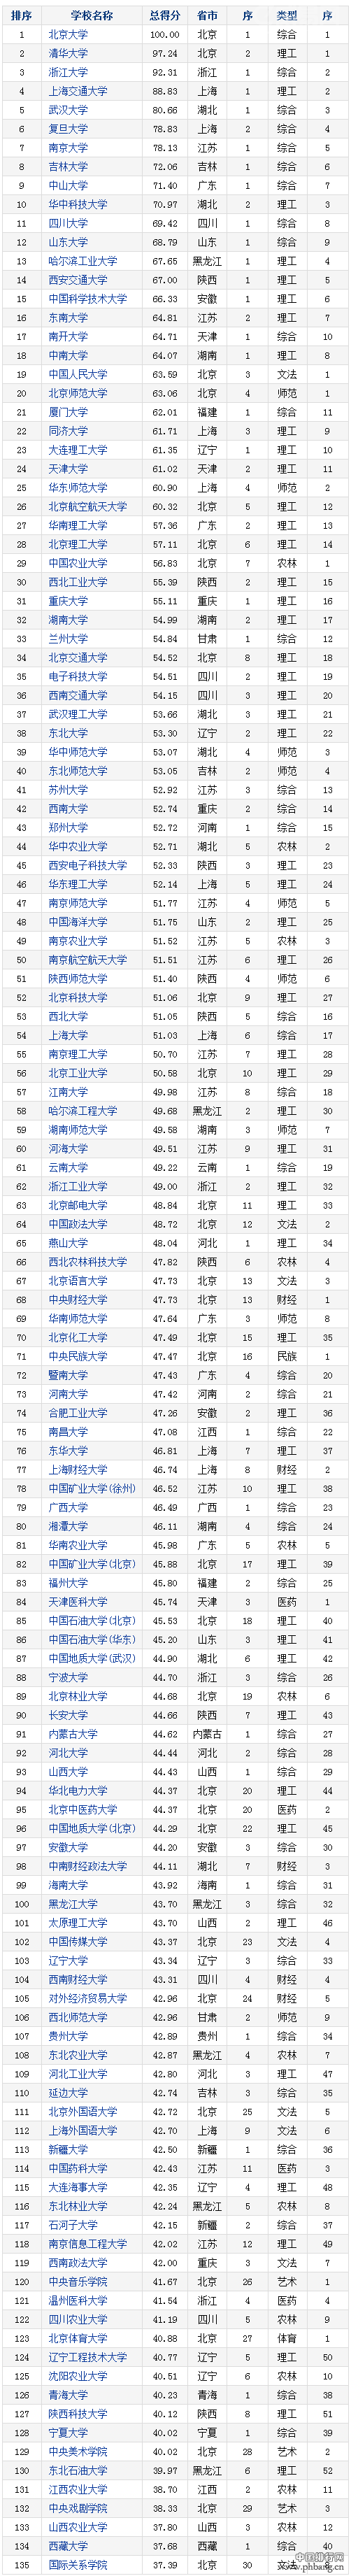 2016-2017年中国重点大学竞争力排行榜-135所高校排名